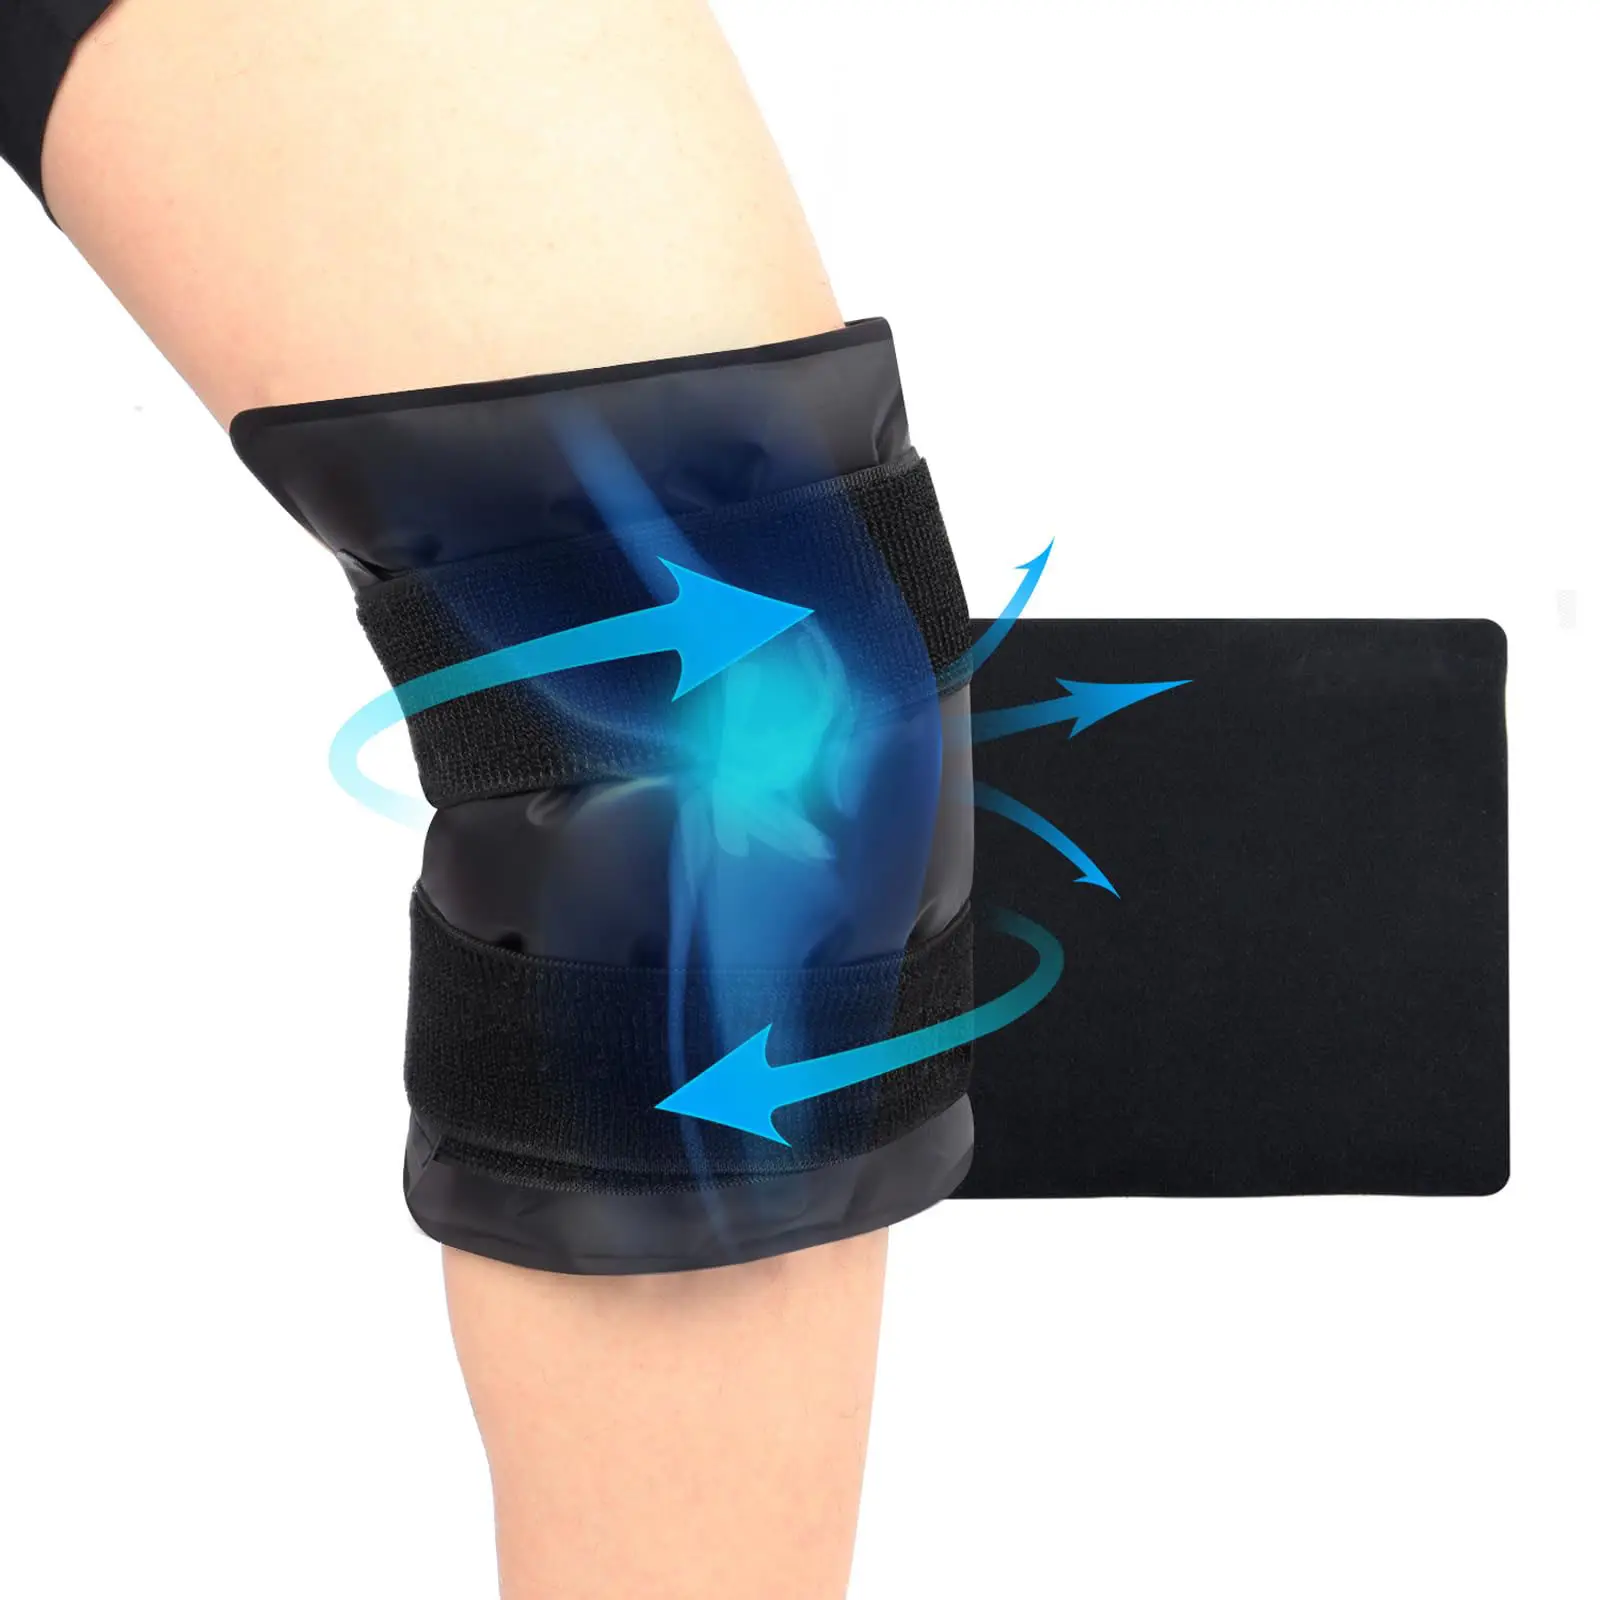 La grande borsa del ghiaccio delle ginocchiere può alleviare il dolore intorno all'intero ginocchio. Pad in Gel riutilizzabile per trattamento caldo e freddo